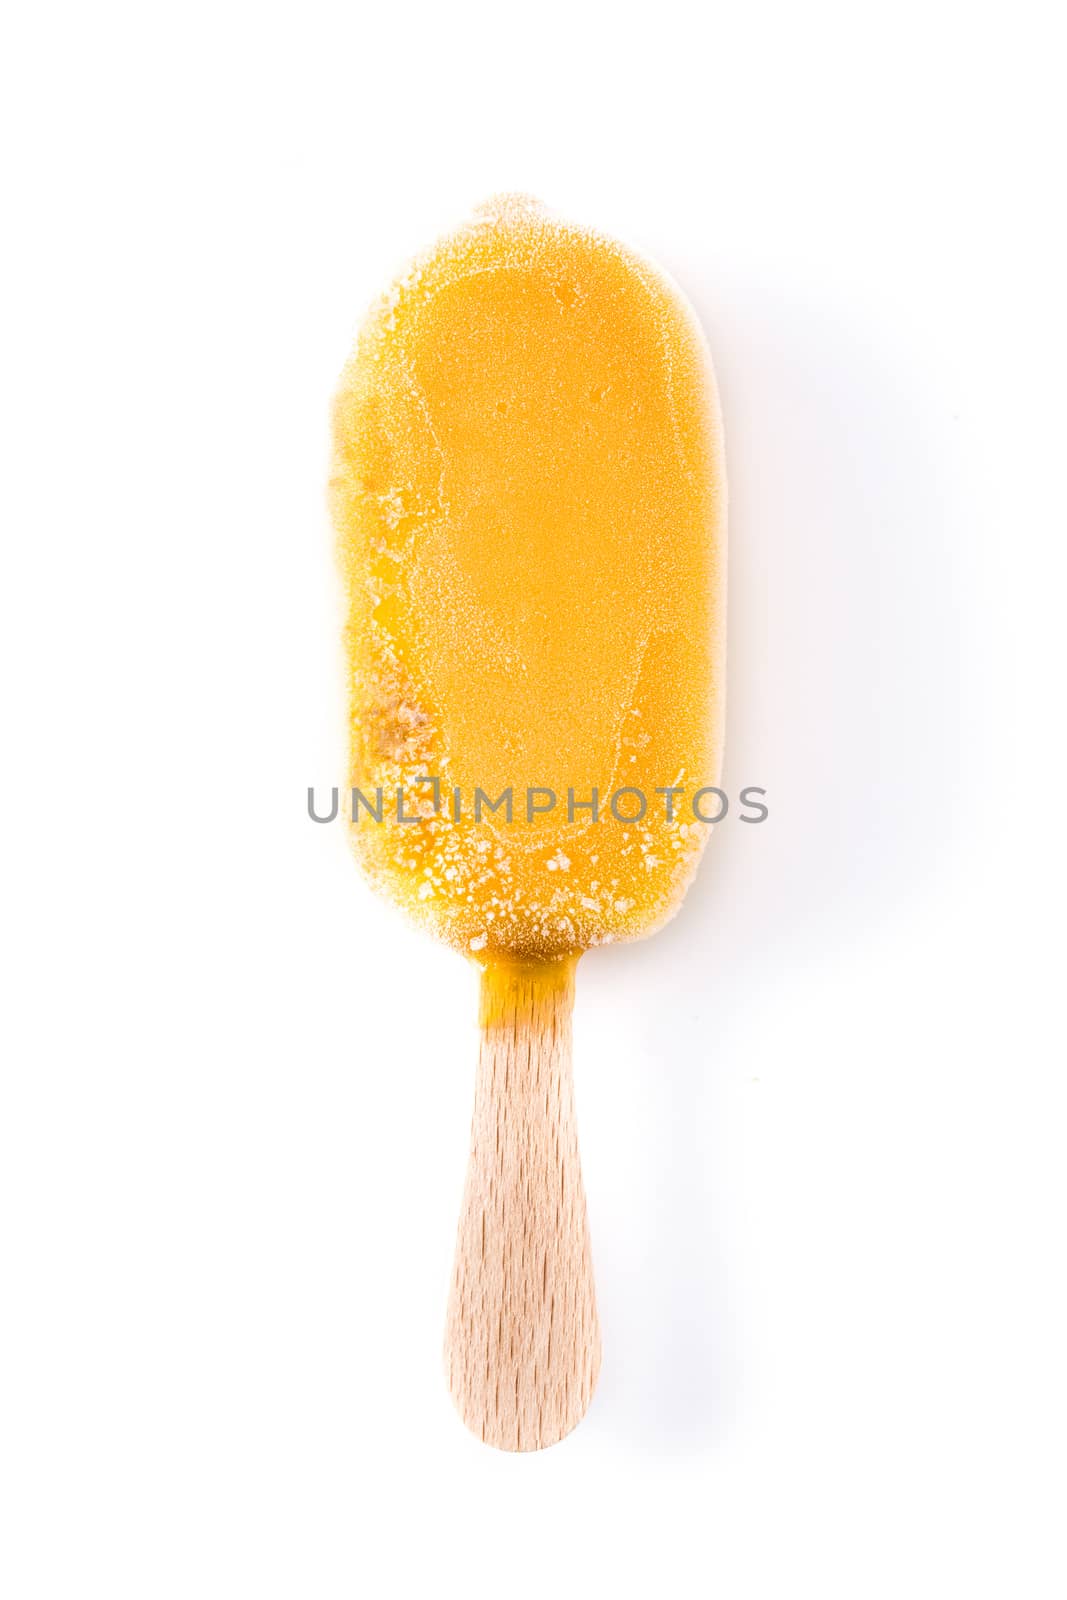 Orange popsicle isolated on white background